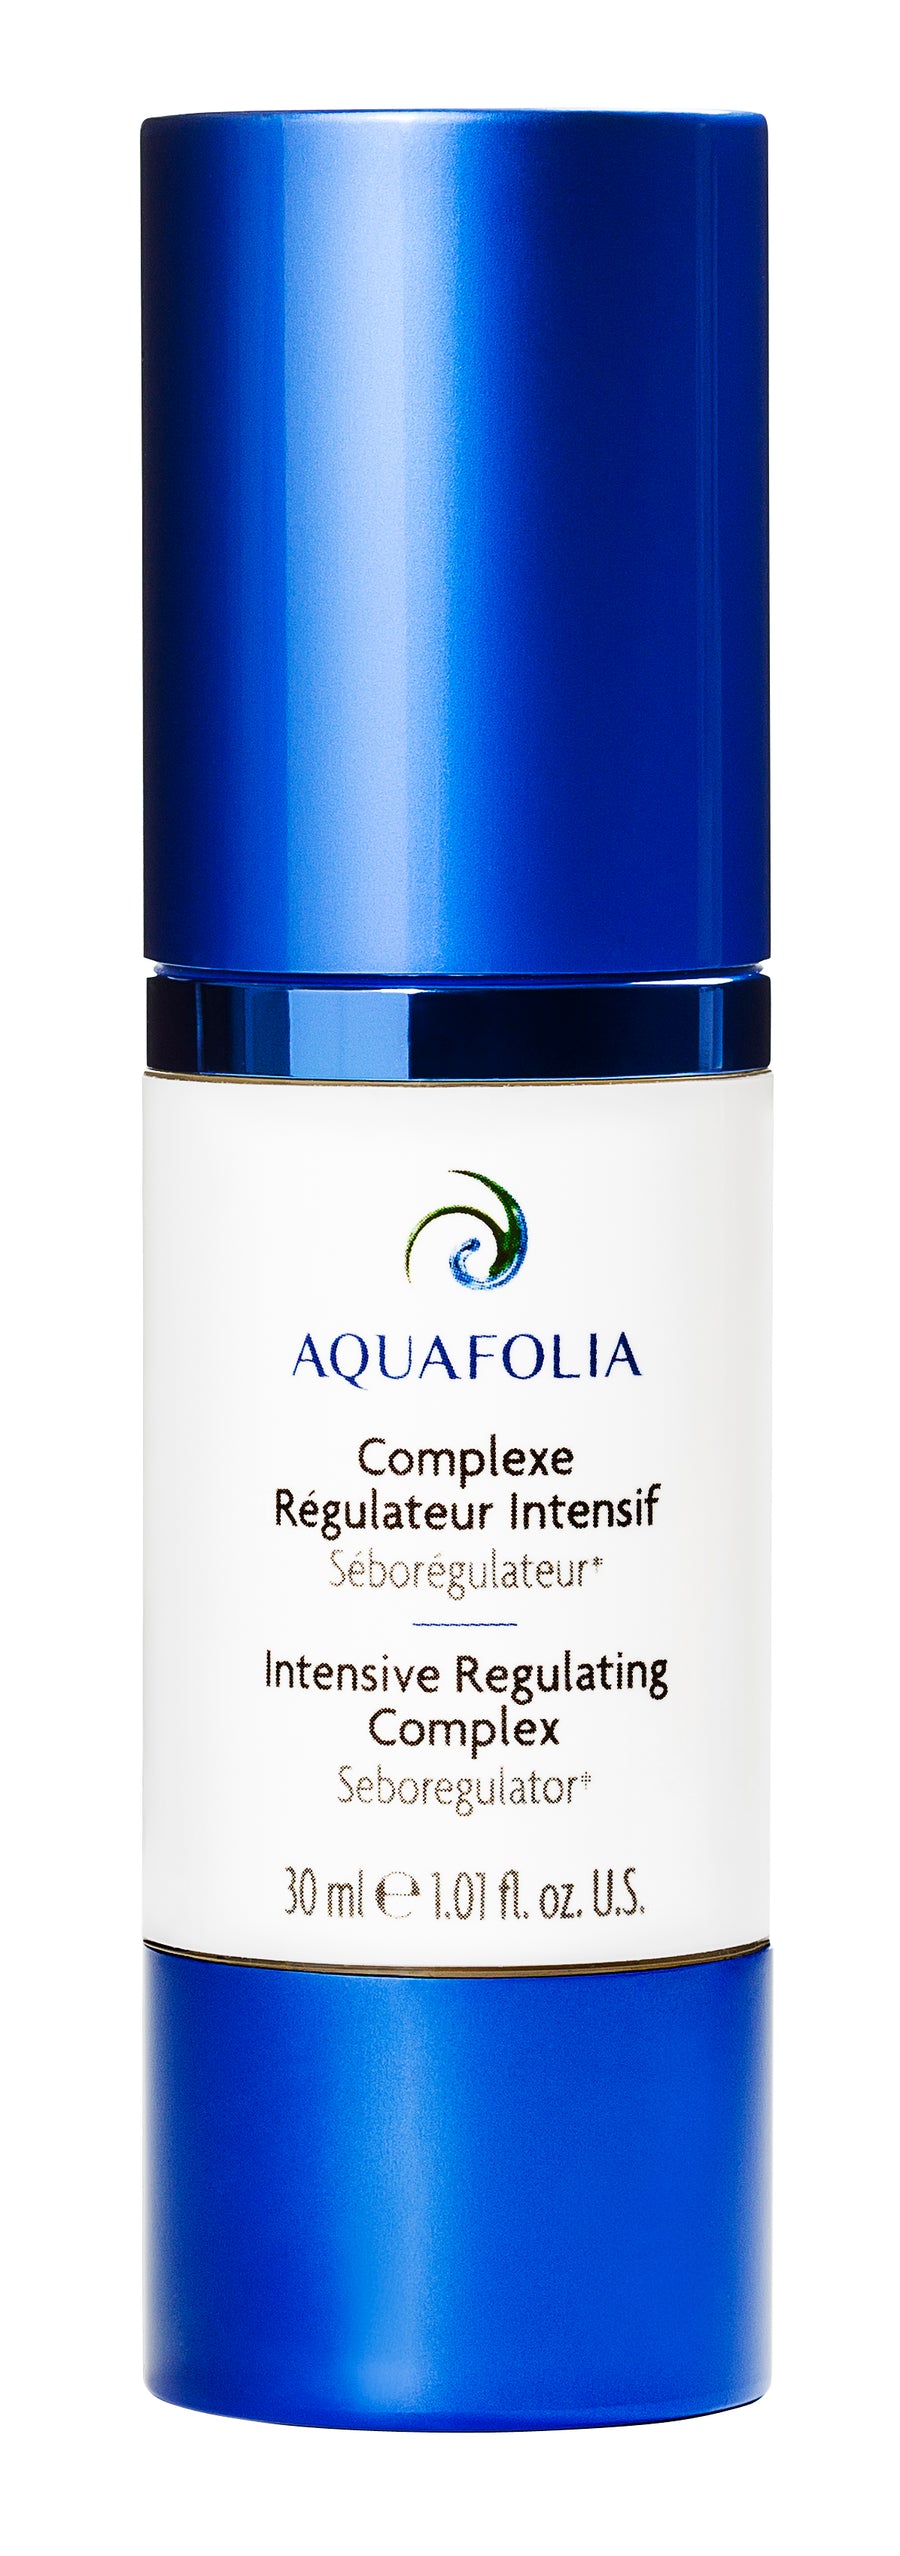 Aquafolia- Complexe Régulateur Intensif- Concept Triple Action 3A